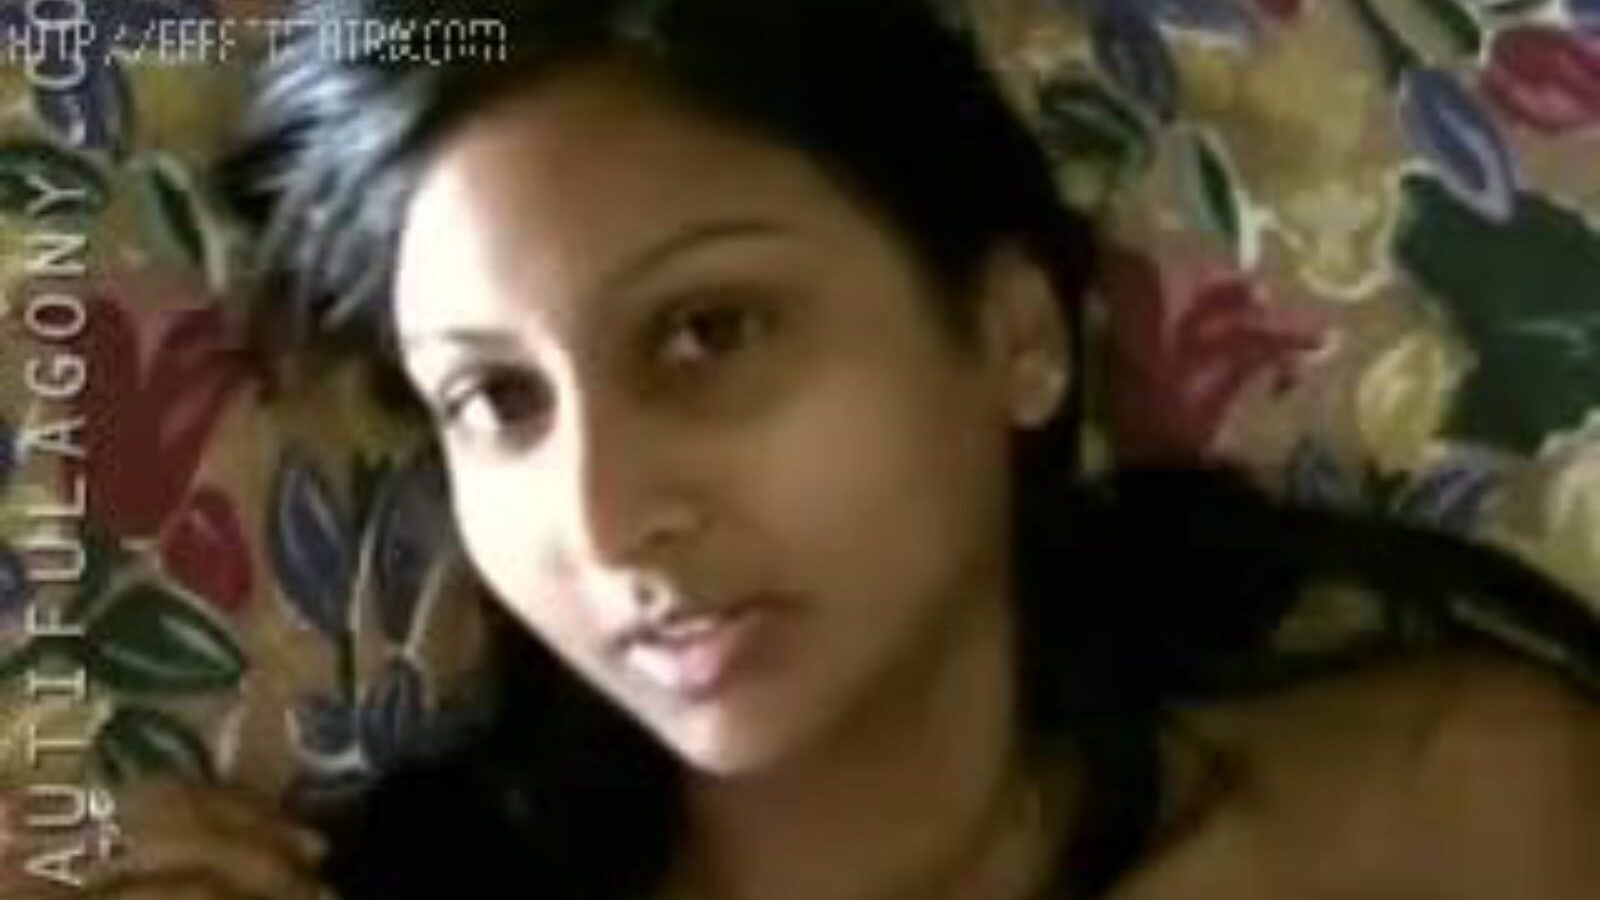 Indian girl sexy facial expression sexual facial expression